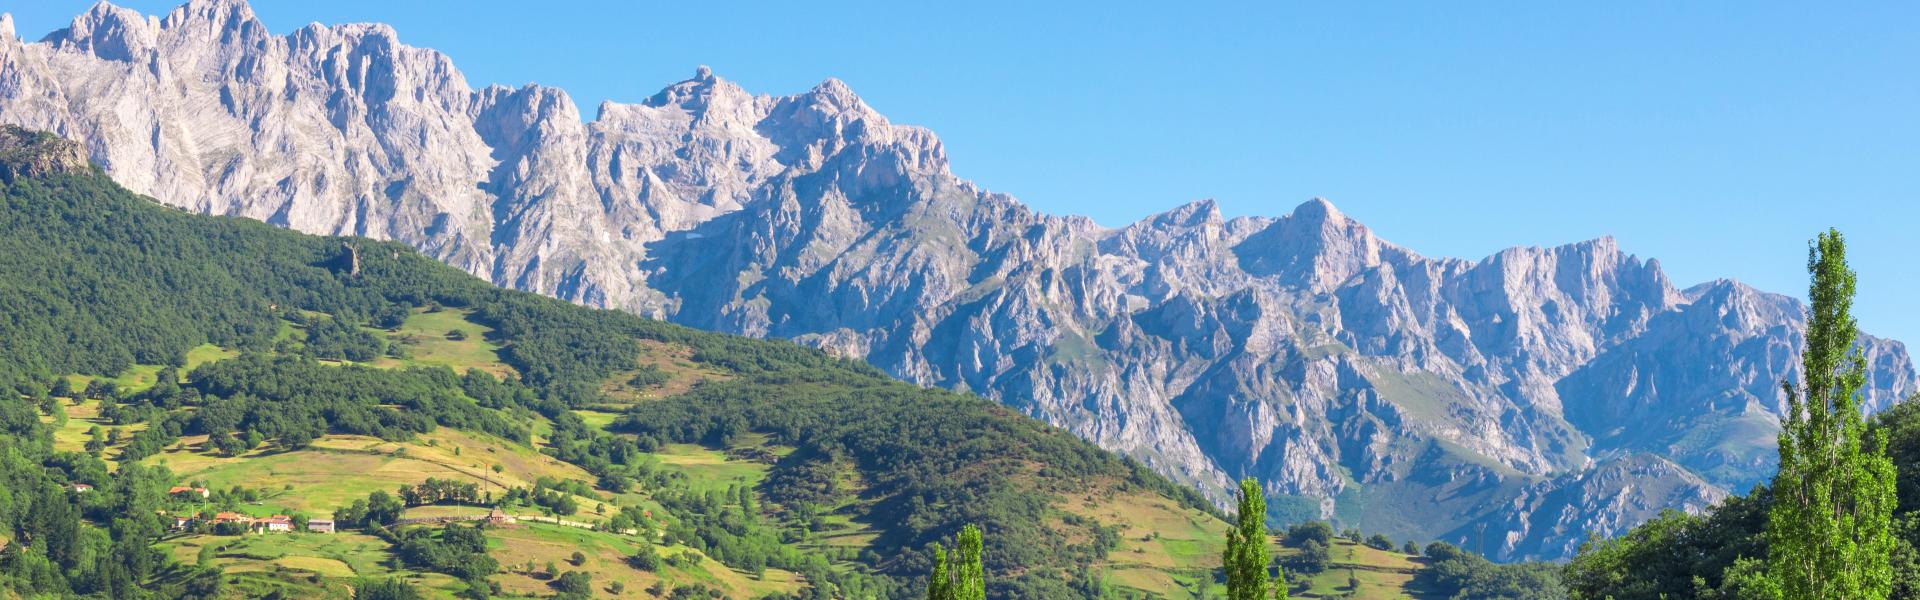 Alquileres y casas de vacaciones en los Picos de Europa - Wimdu